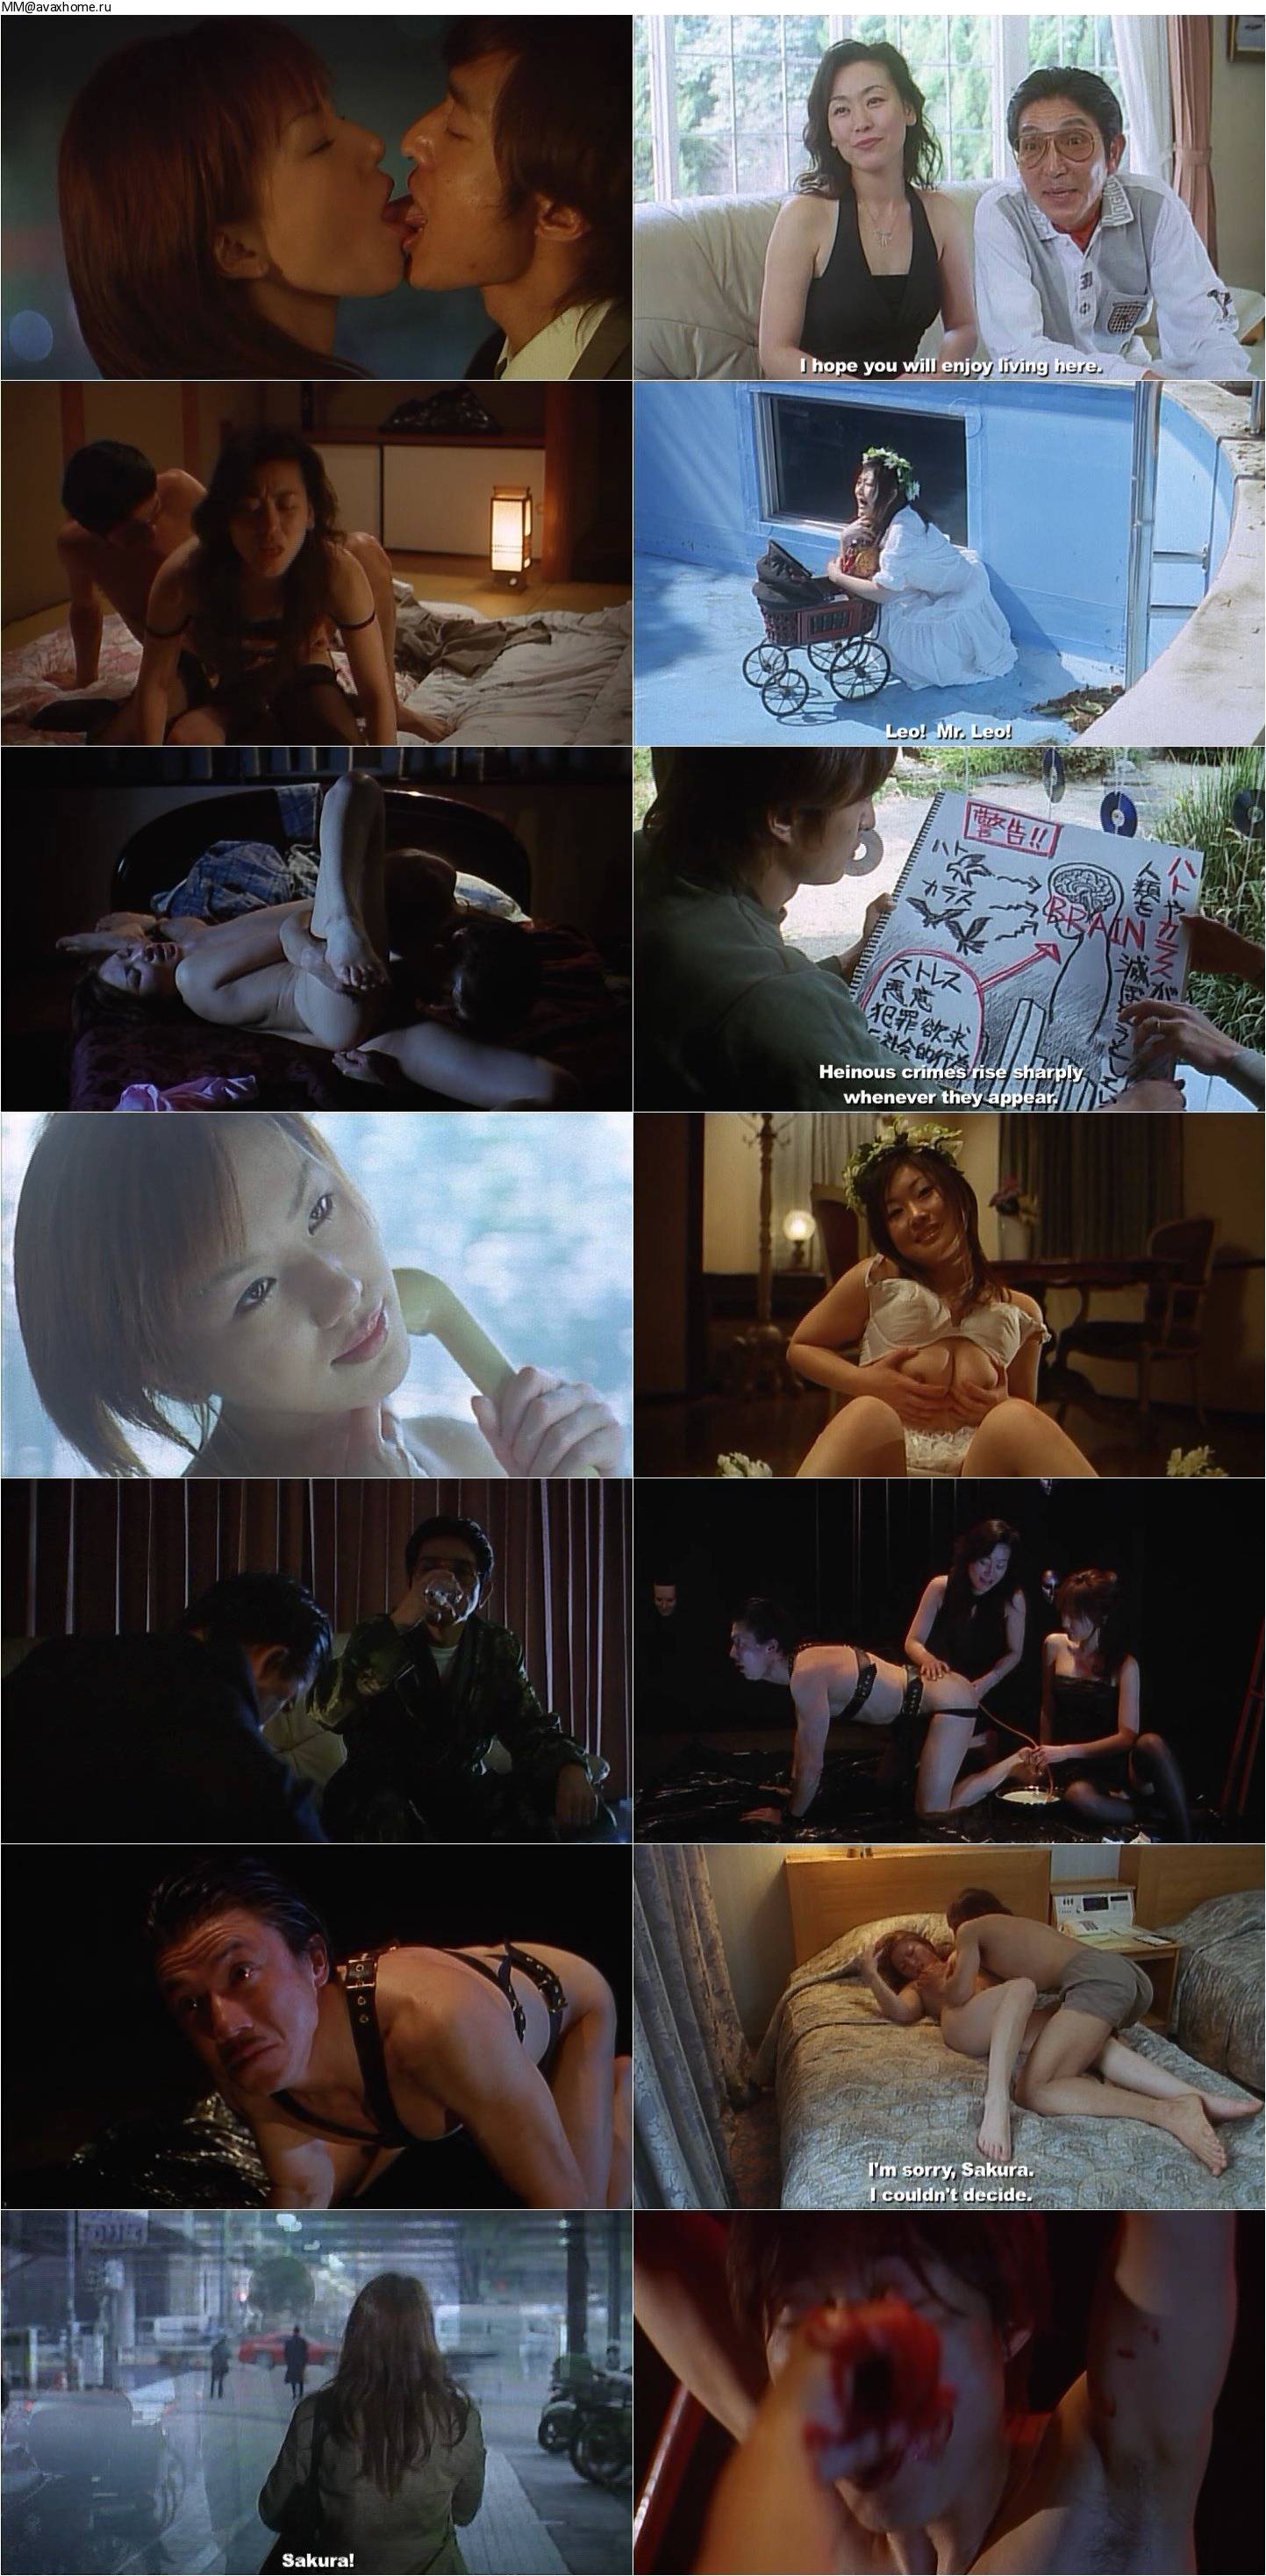 The Japanese Wife Next Door: Part 2 (2004) .